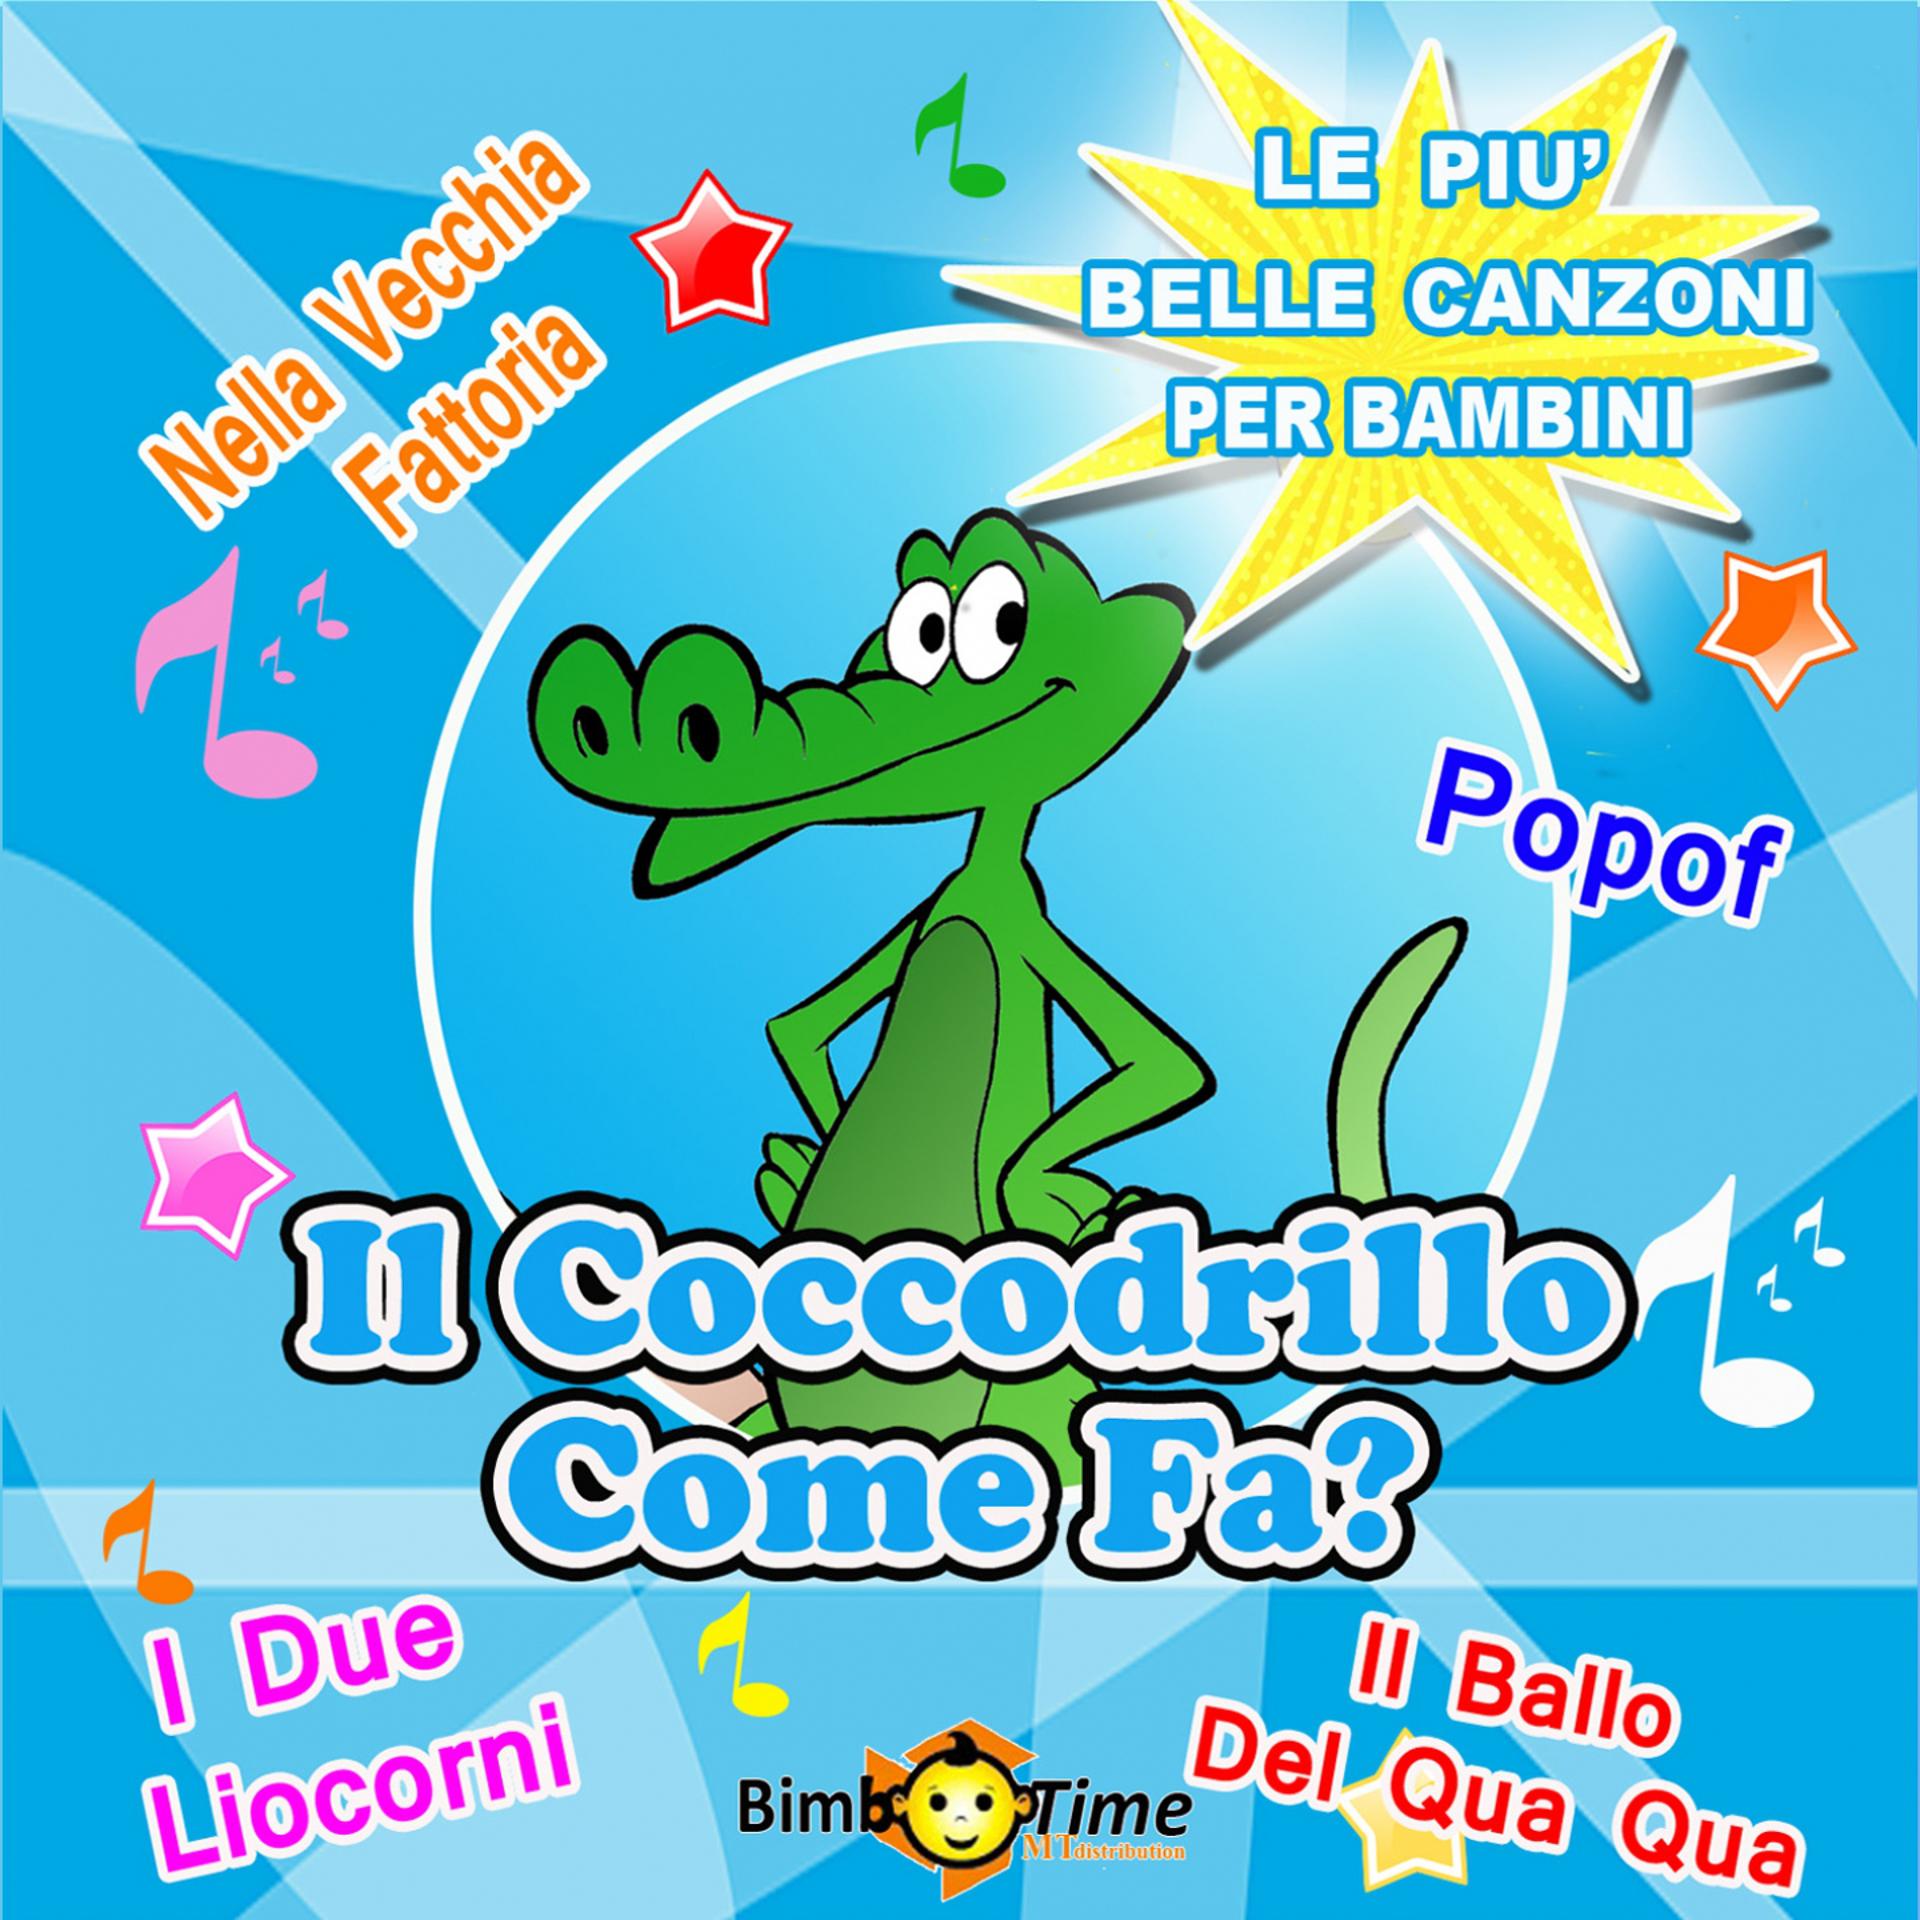 Постер альбома Il coccodrillo come fa?